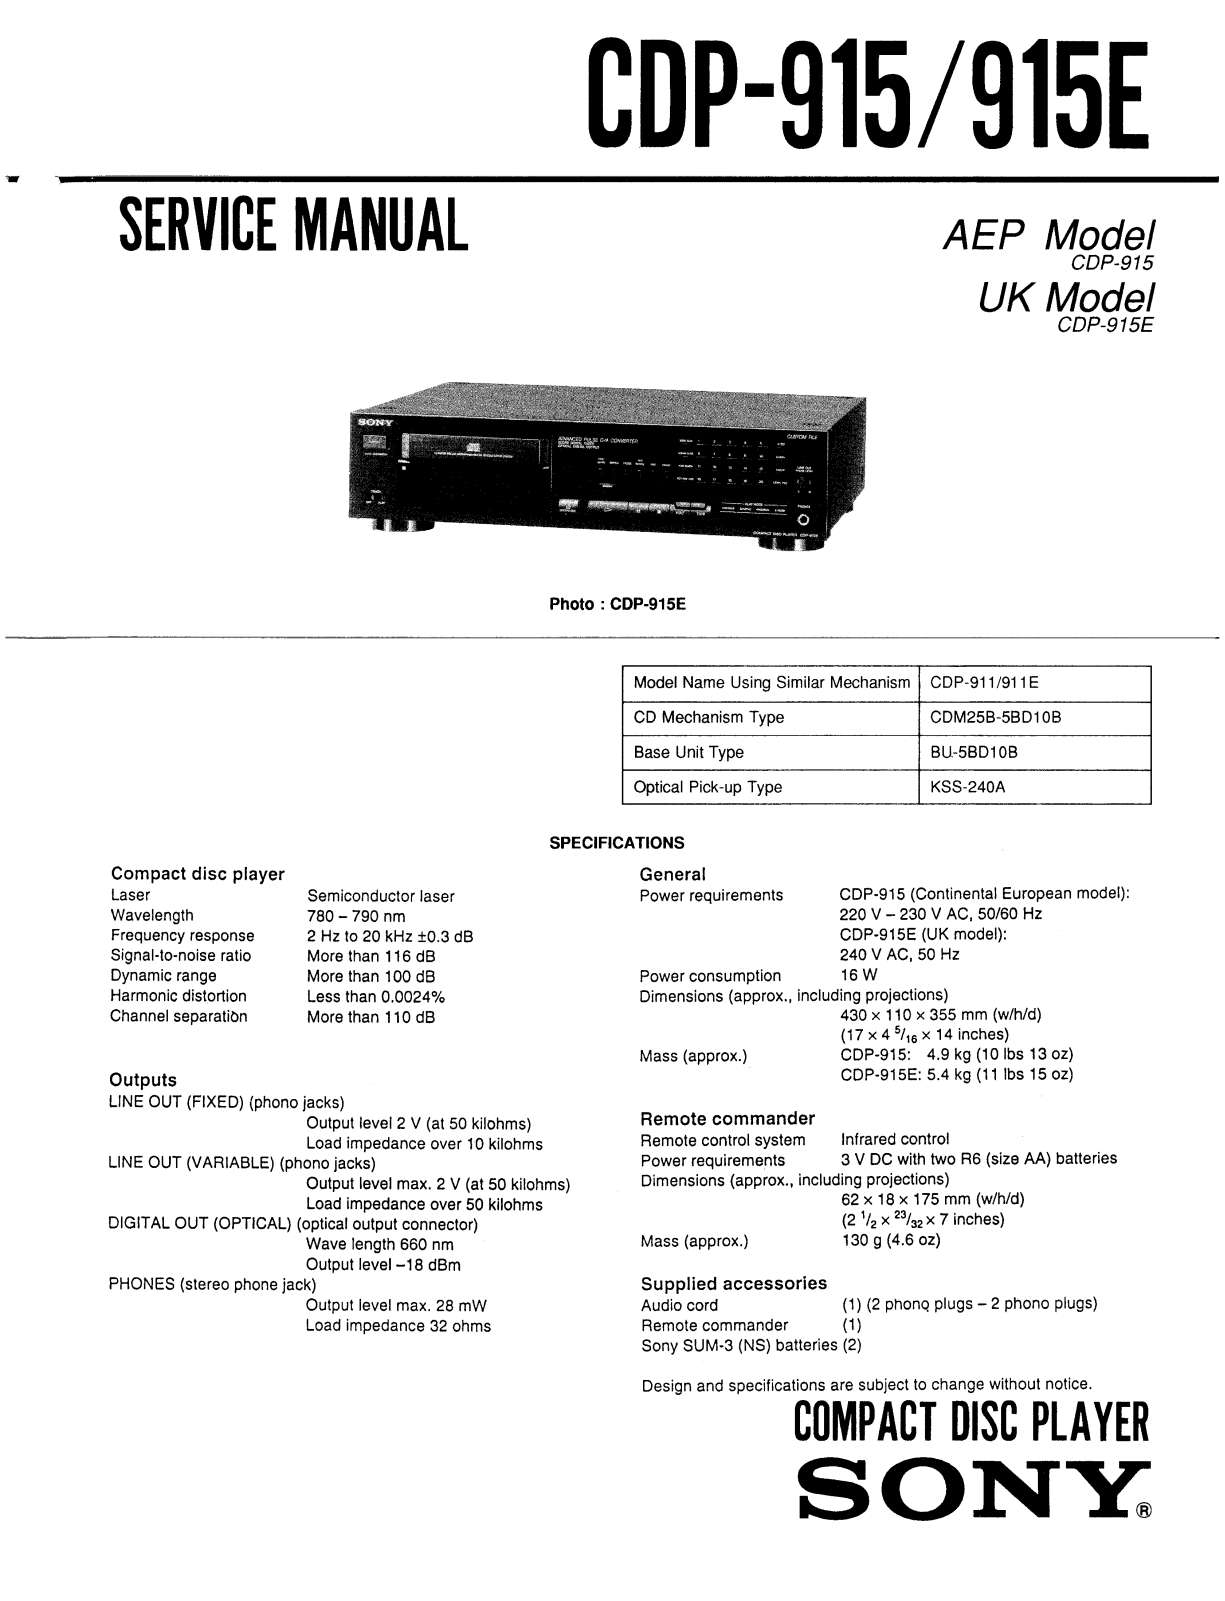 SONY CDP-915-E Service Manual